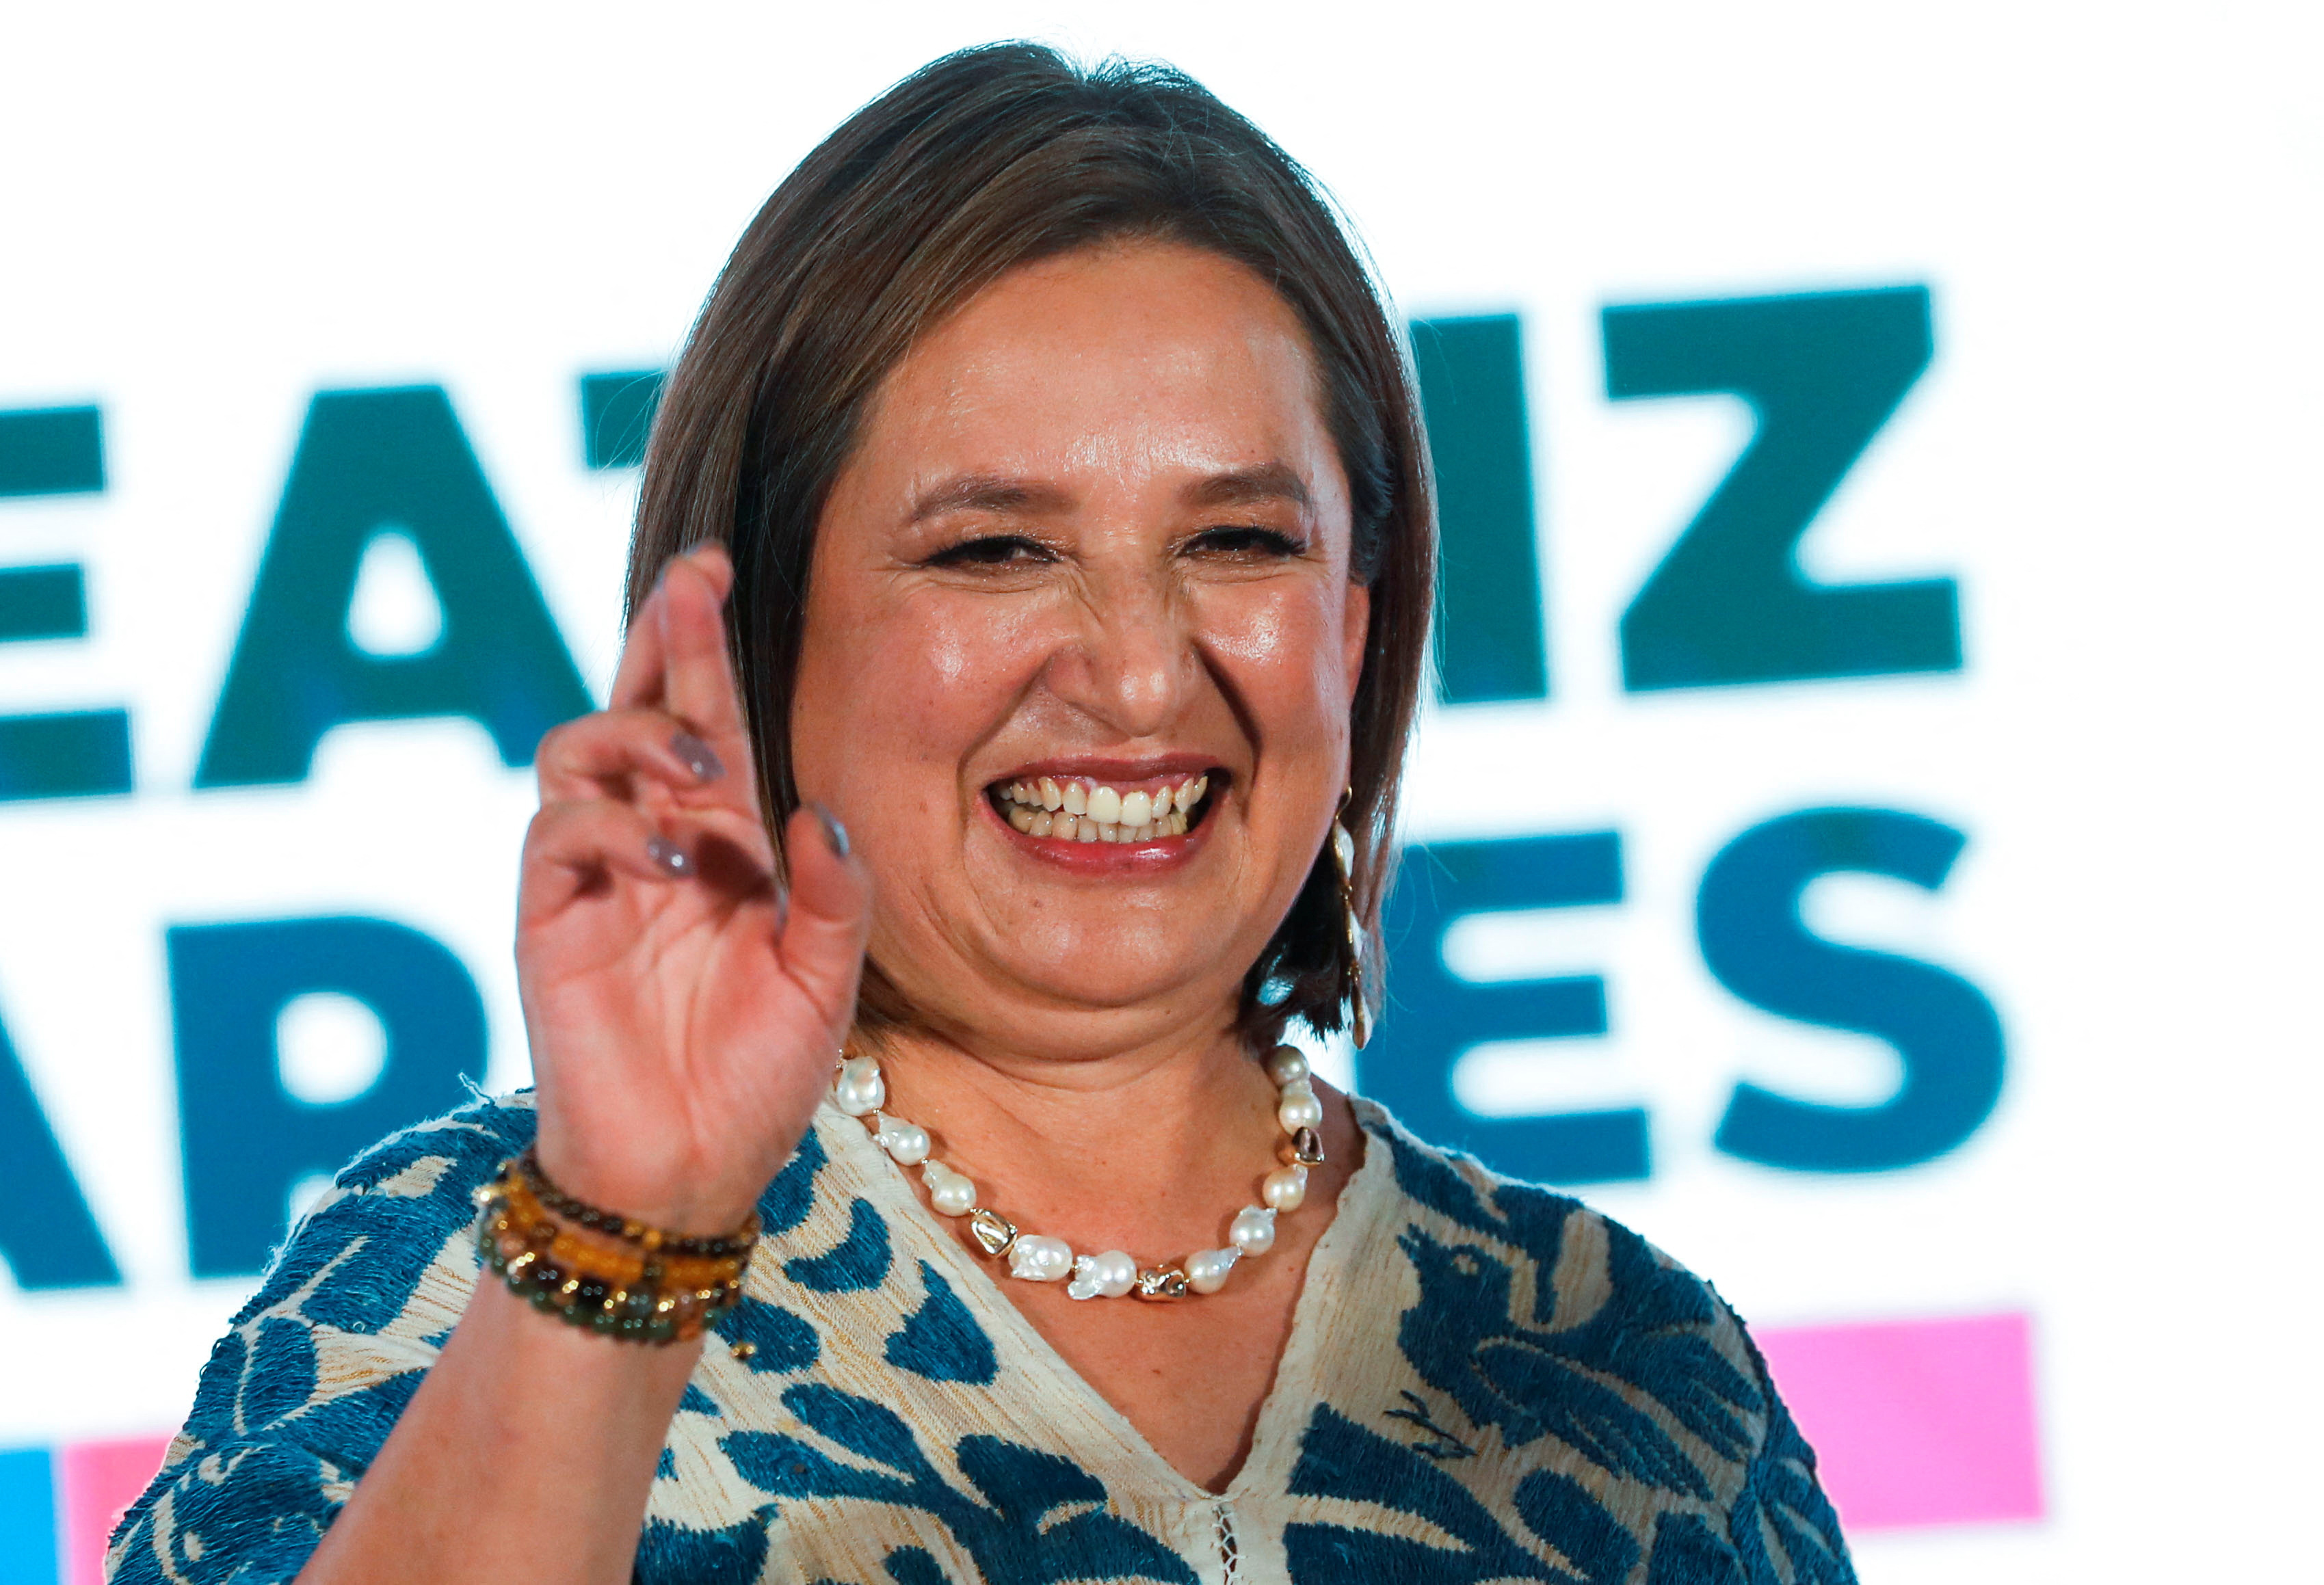 El mexicano Gálvez obtiene el apoyo del partido rival, allanando el camino para una carrera presidencial